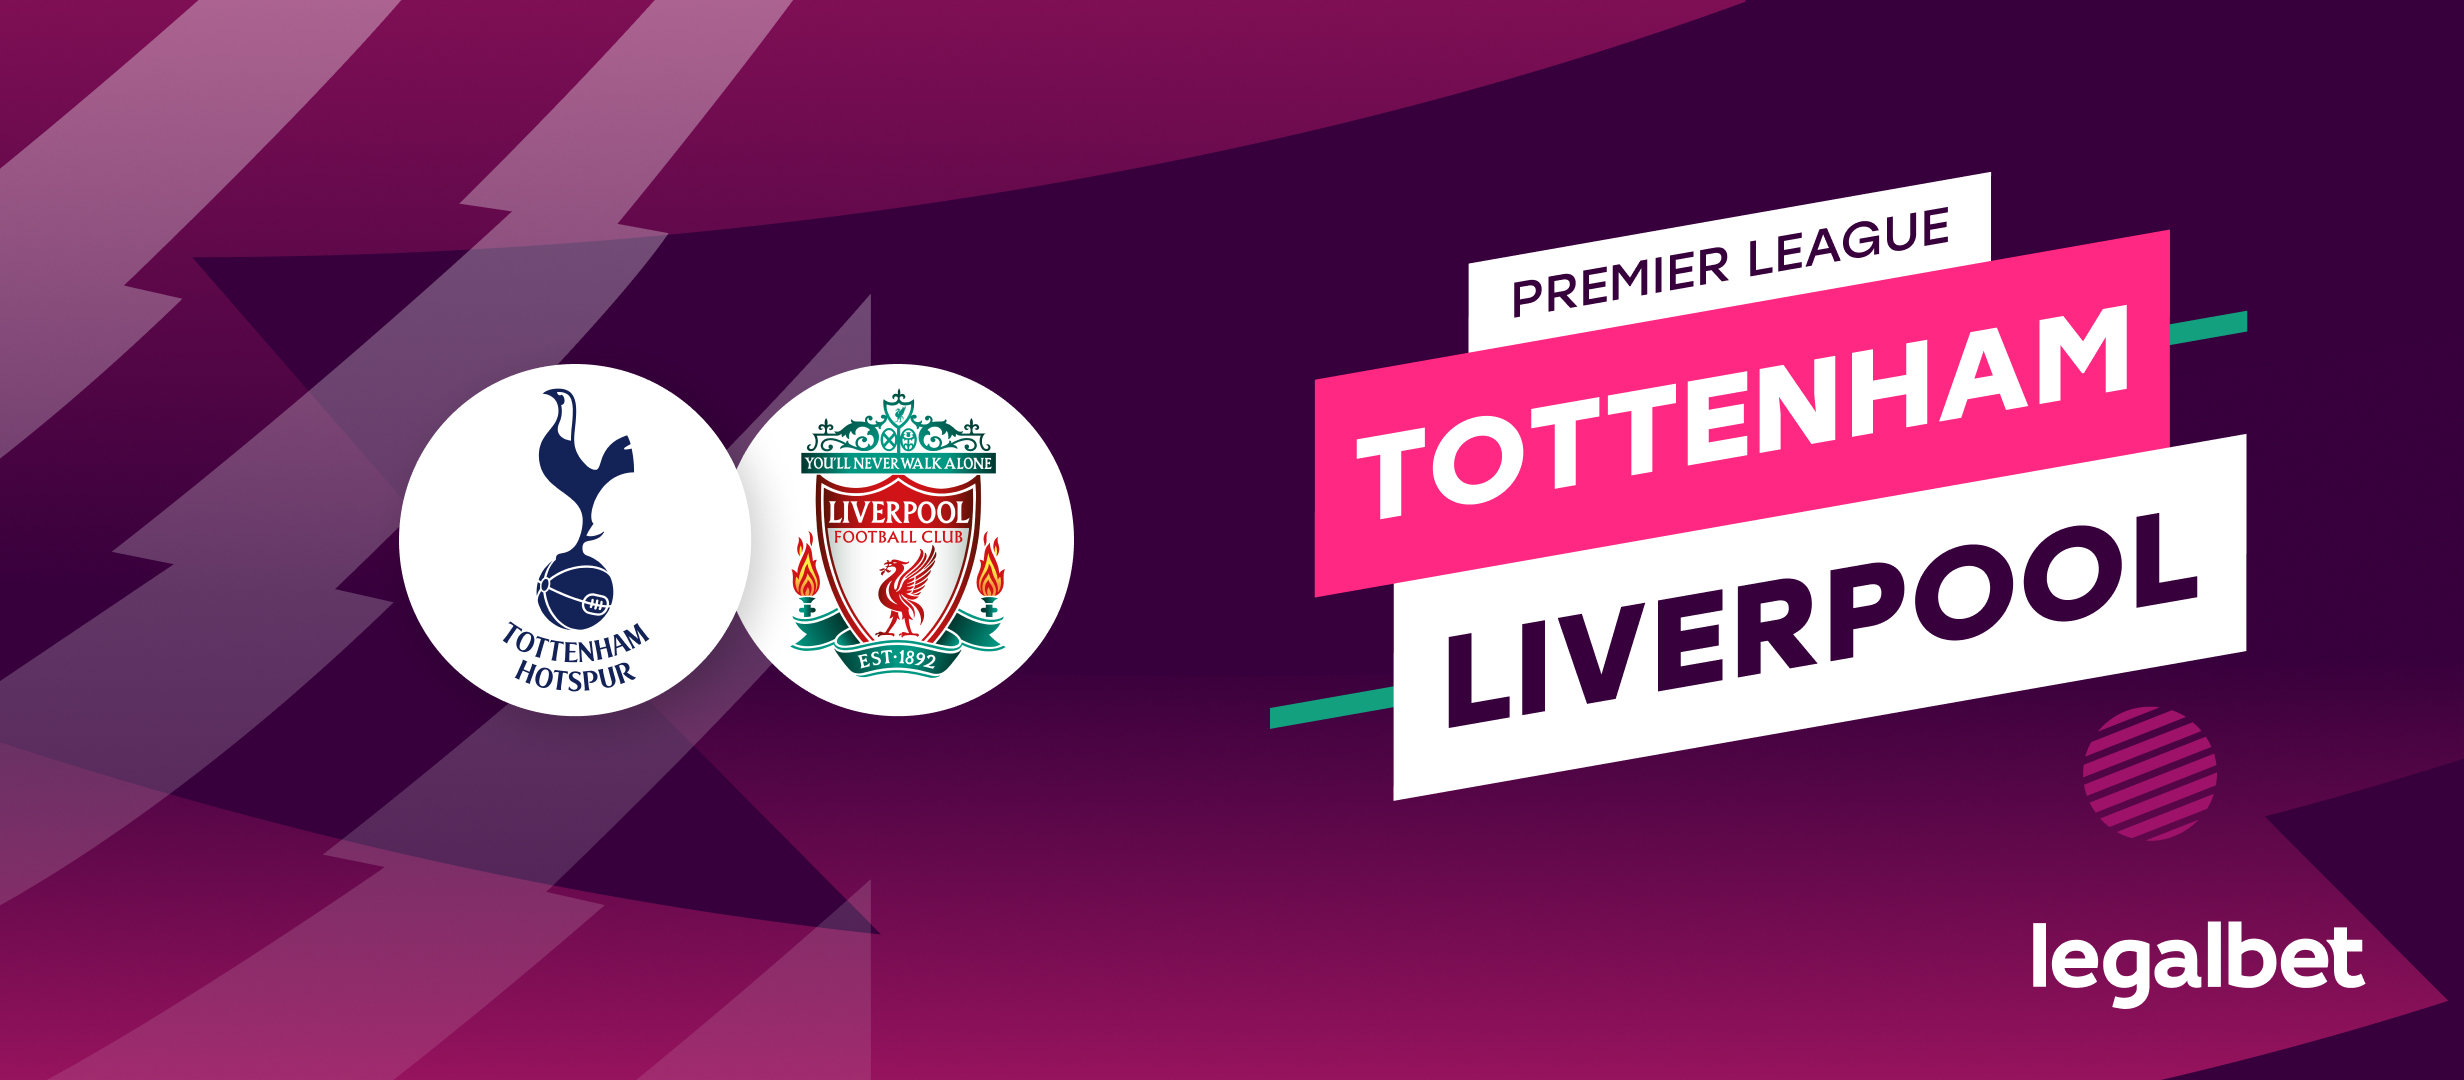 Tottenham - Liverpool, ponturi la pariuri Premier League